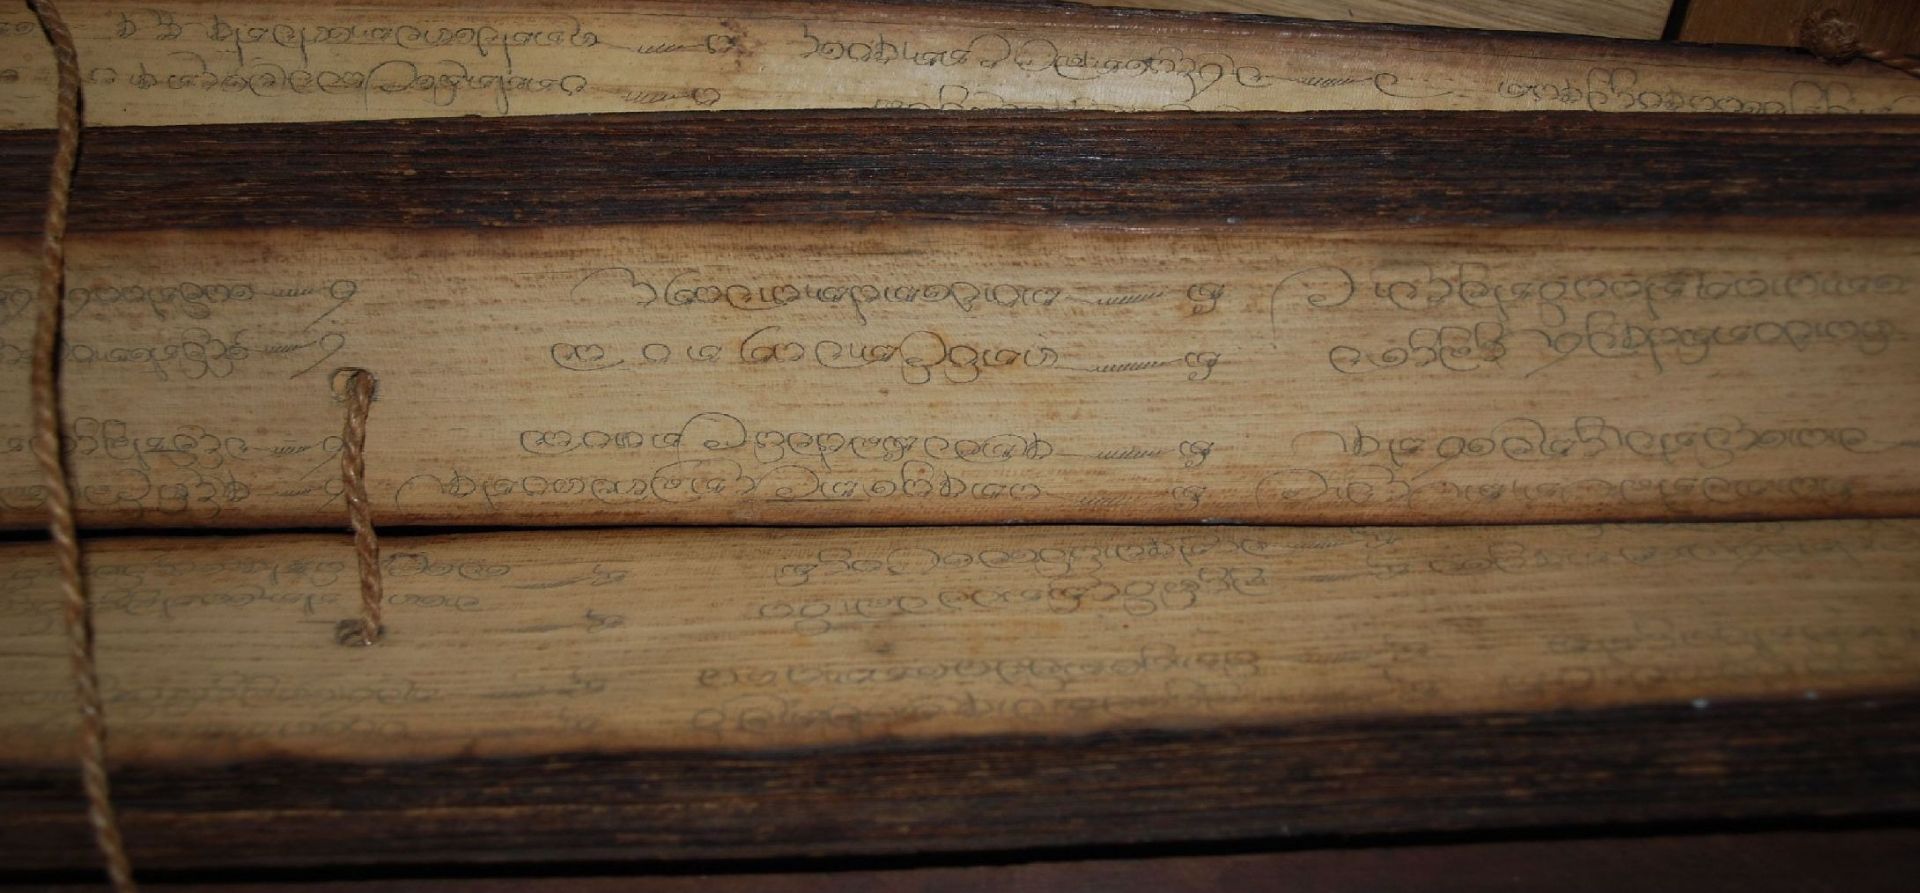 Tibetan. Gebetsbuch, Mantrasmit Bleistift geschrieben, dickes Reispapier mit Holzdeckel, älter?, - Bild 4 aus 9